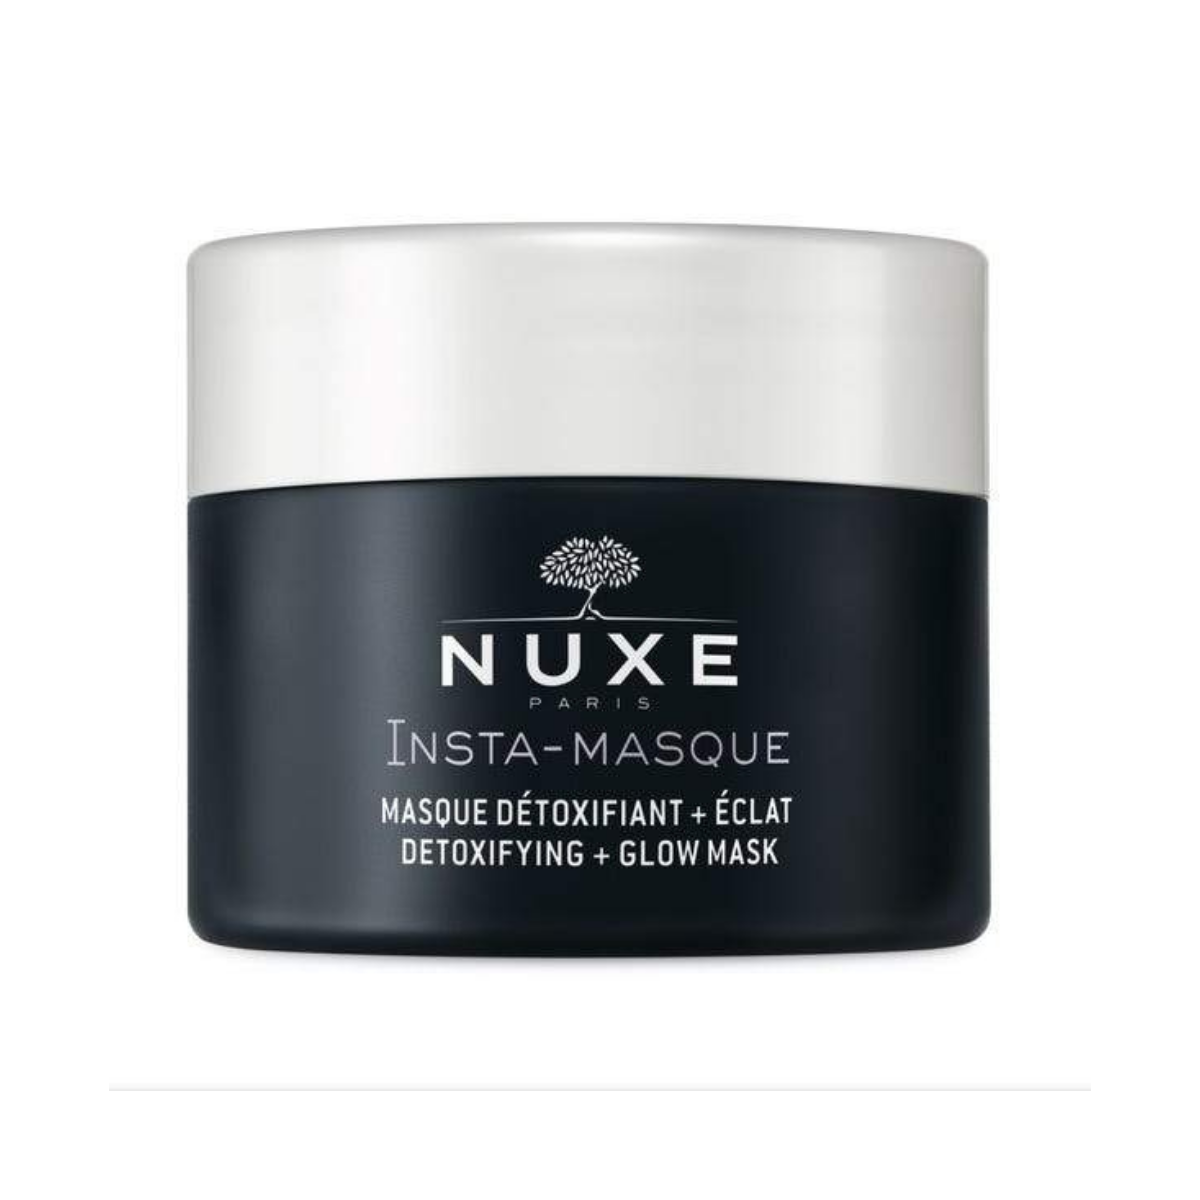 Nuxe Insta- Masque Detoxifying + Glow Mask